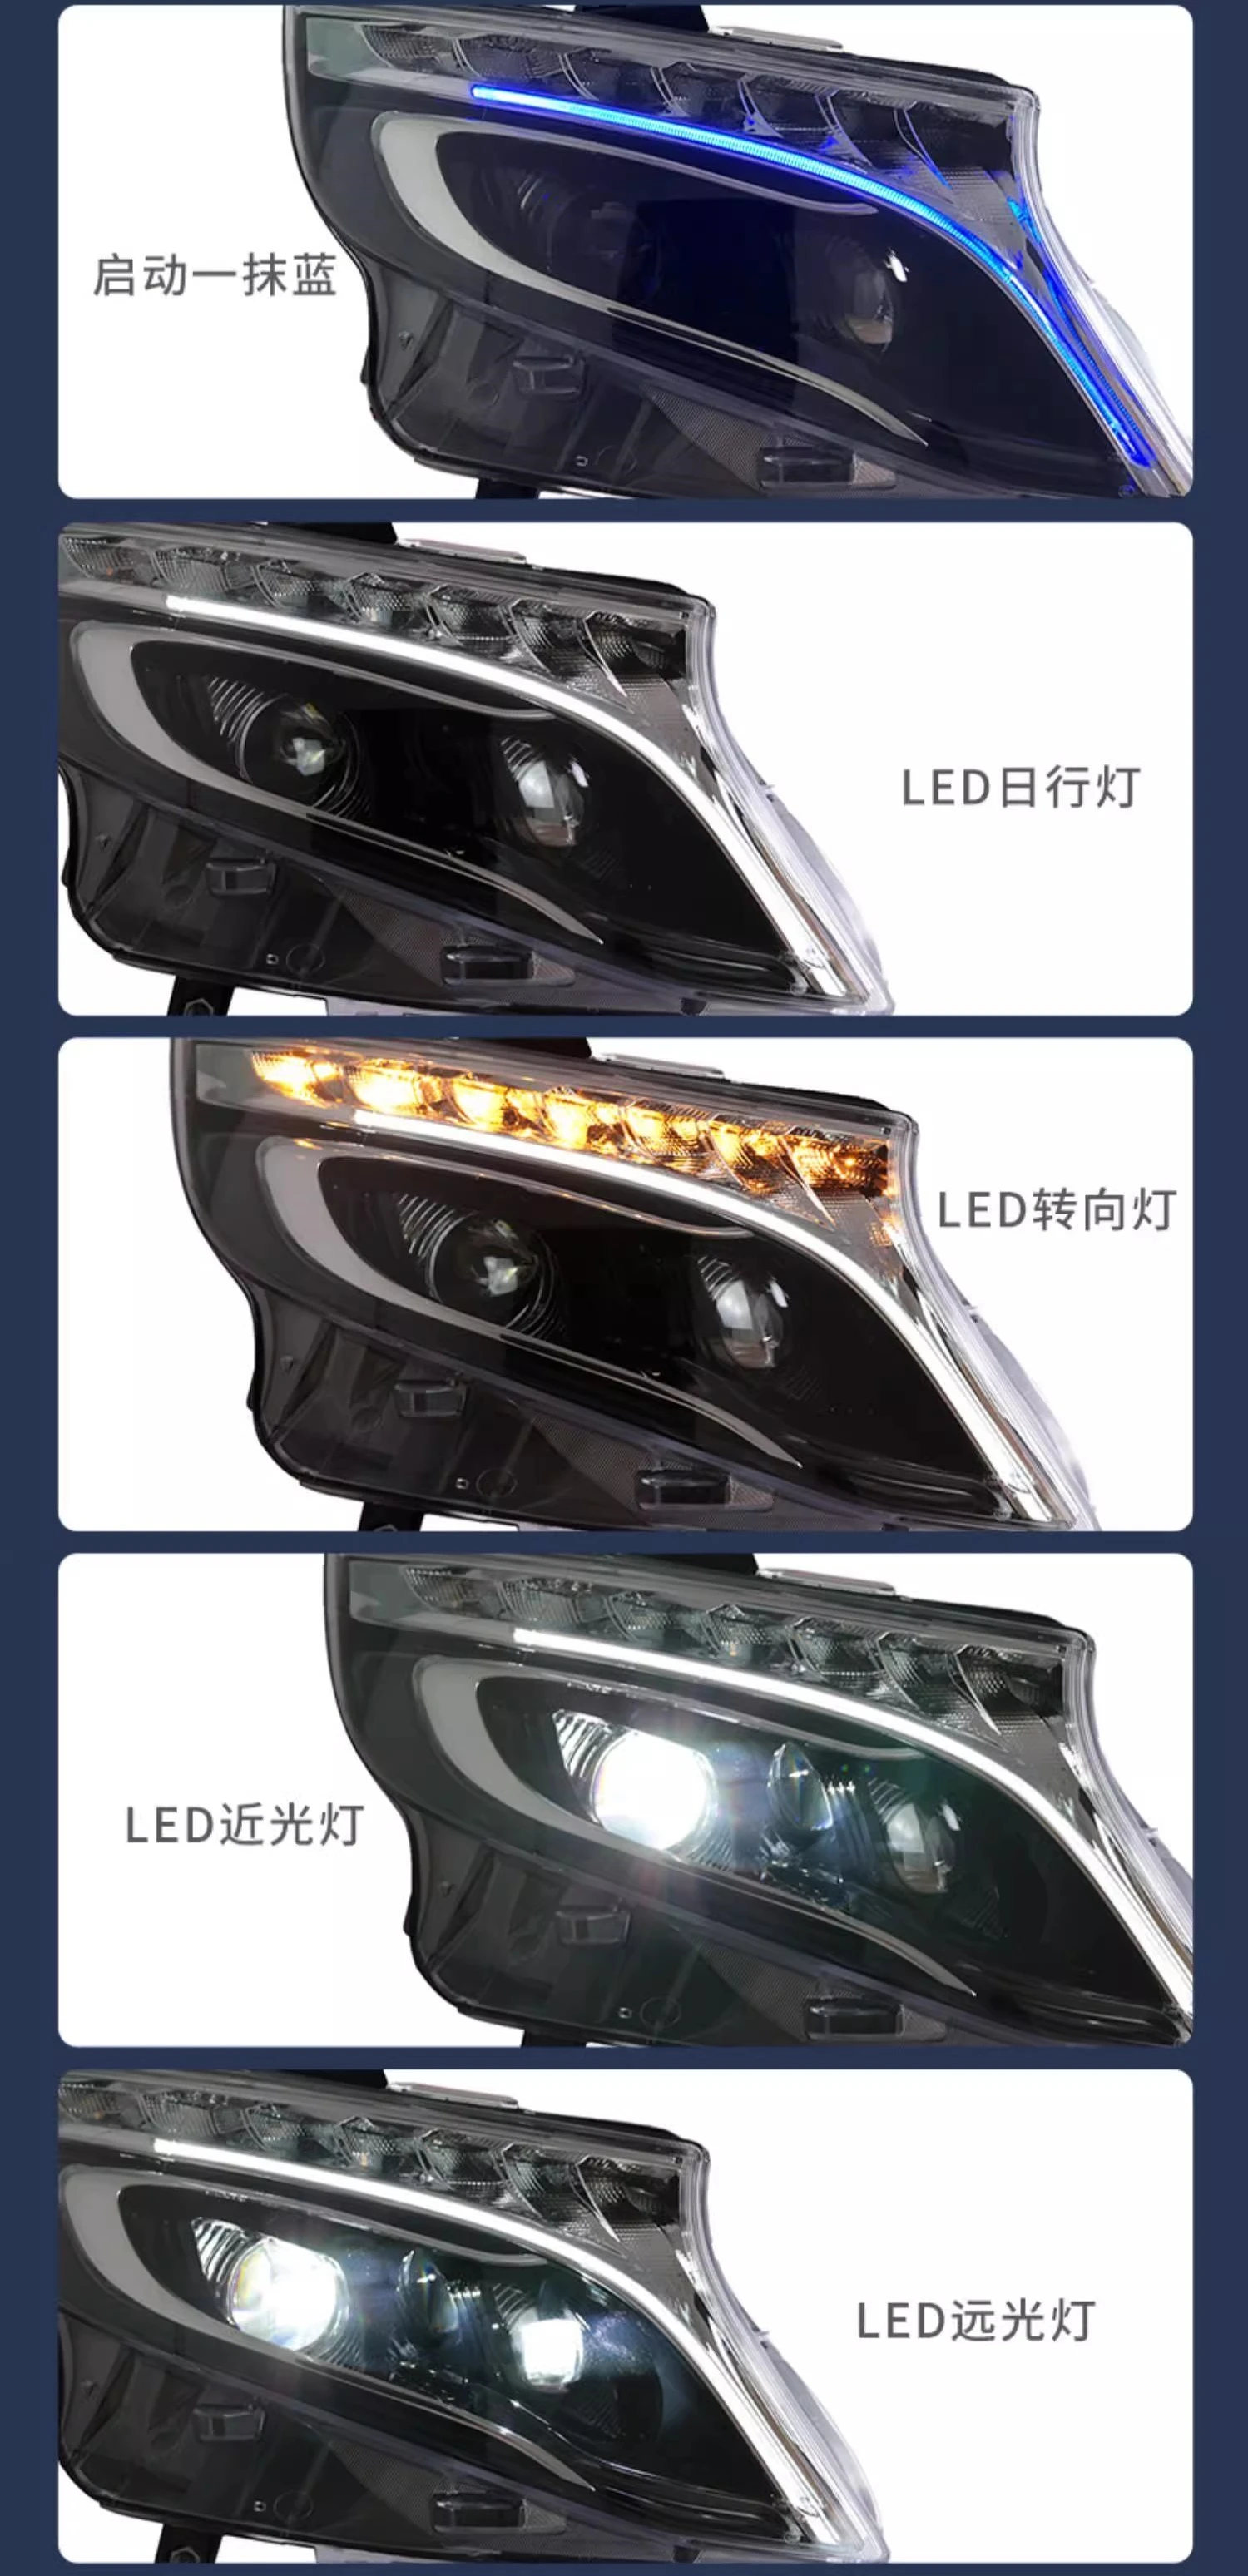 Remplacement LED Siècle des Lumières Intérieur Mercedes Benz Vito W447  (2015-2018) Wit